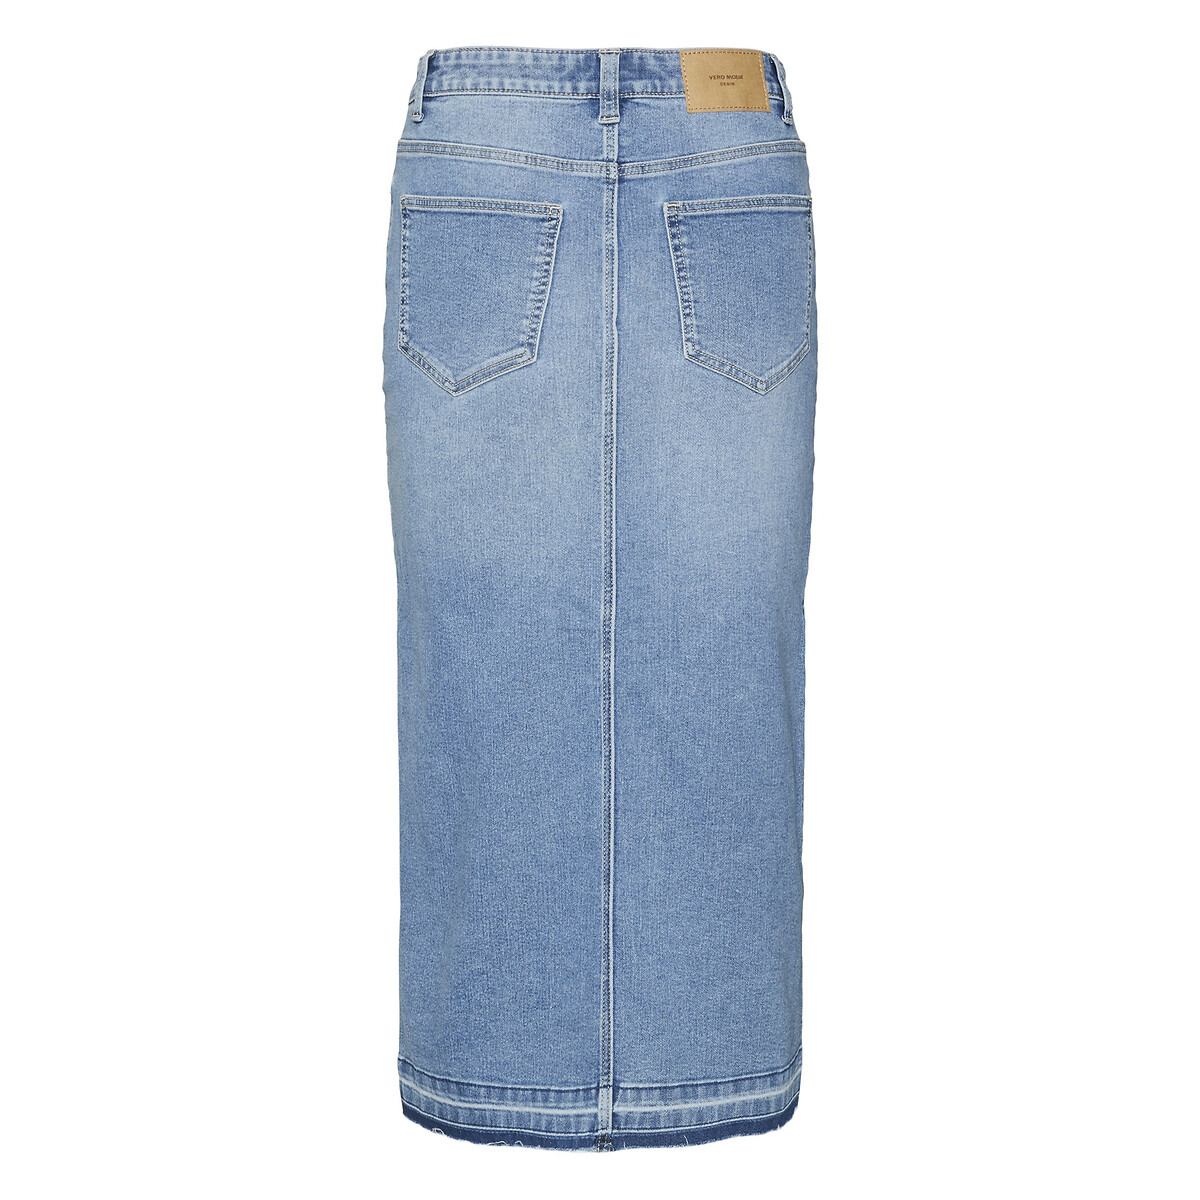 Юбка из джинсовой ткани с высокой посадкой  XL синий LaRedoute, размер XL - фото 2